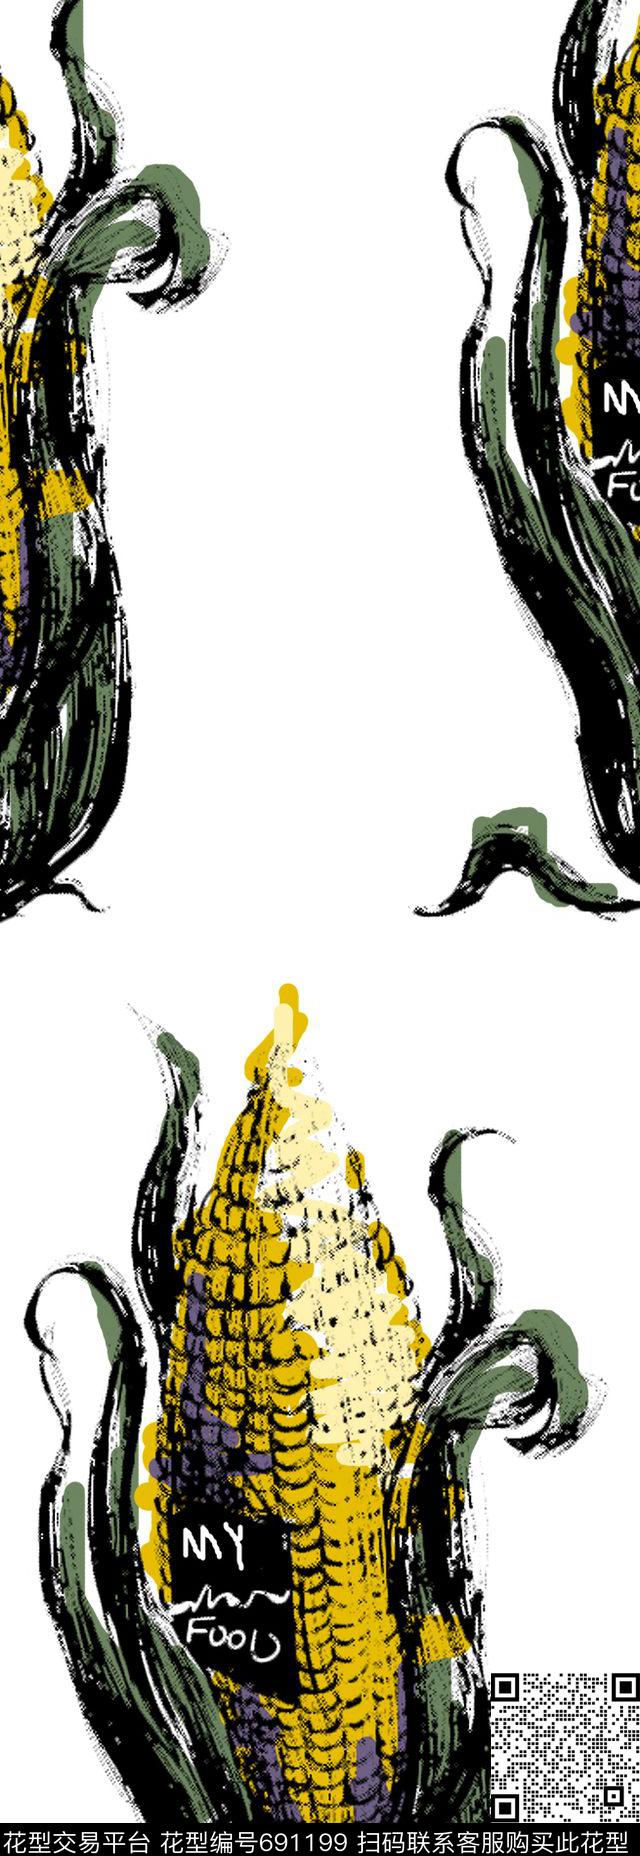 my food.jpg - 691199 - 漫画 植物、玉米、涂鸦 玩具 - 传统印花花型 － 男装花型设计 － 瓦栏